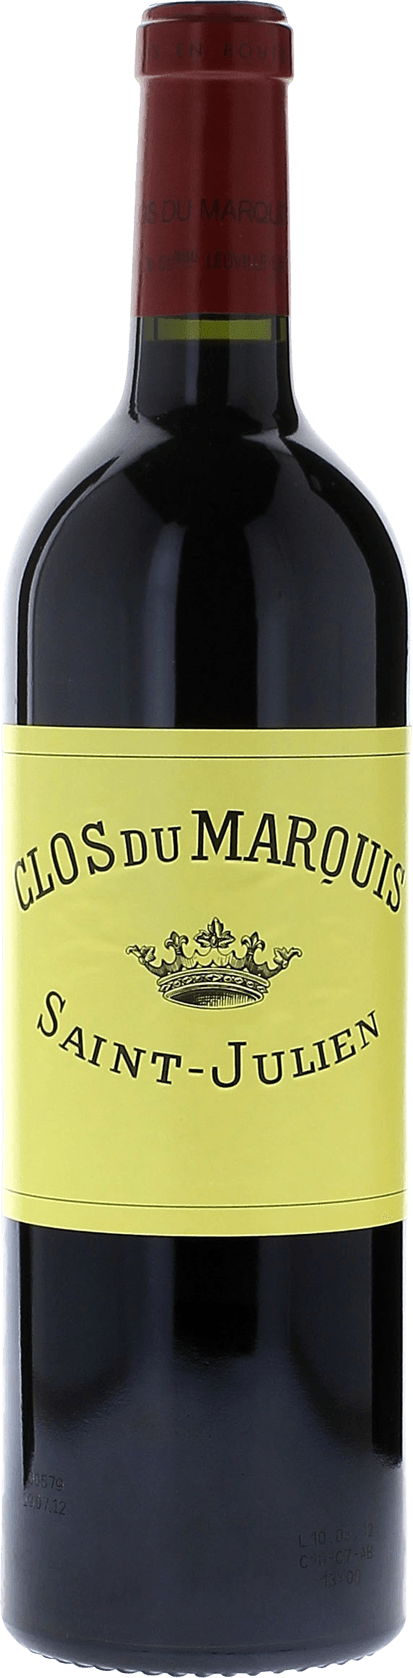 Clos du marquis 1999 2me vin de LEOVILLE LAS CASES Saint-Julien, Bordeaux rouge